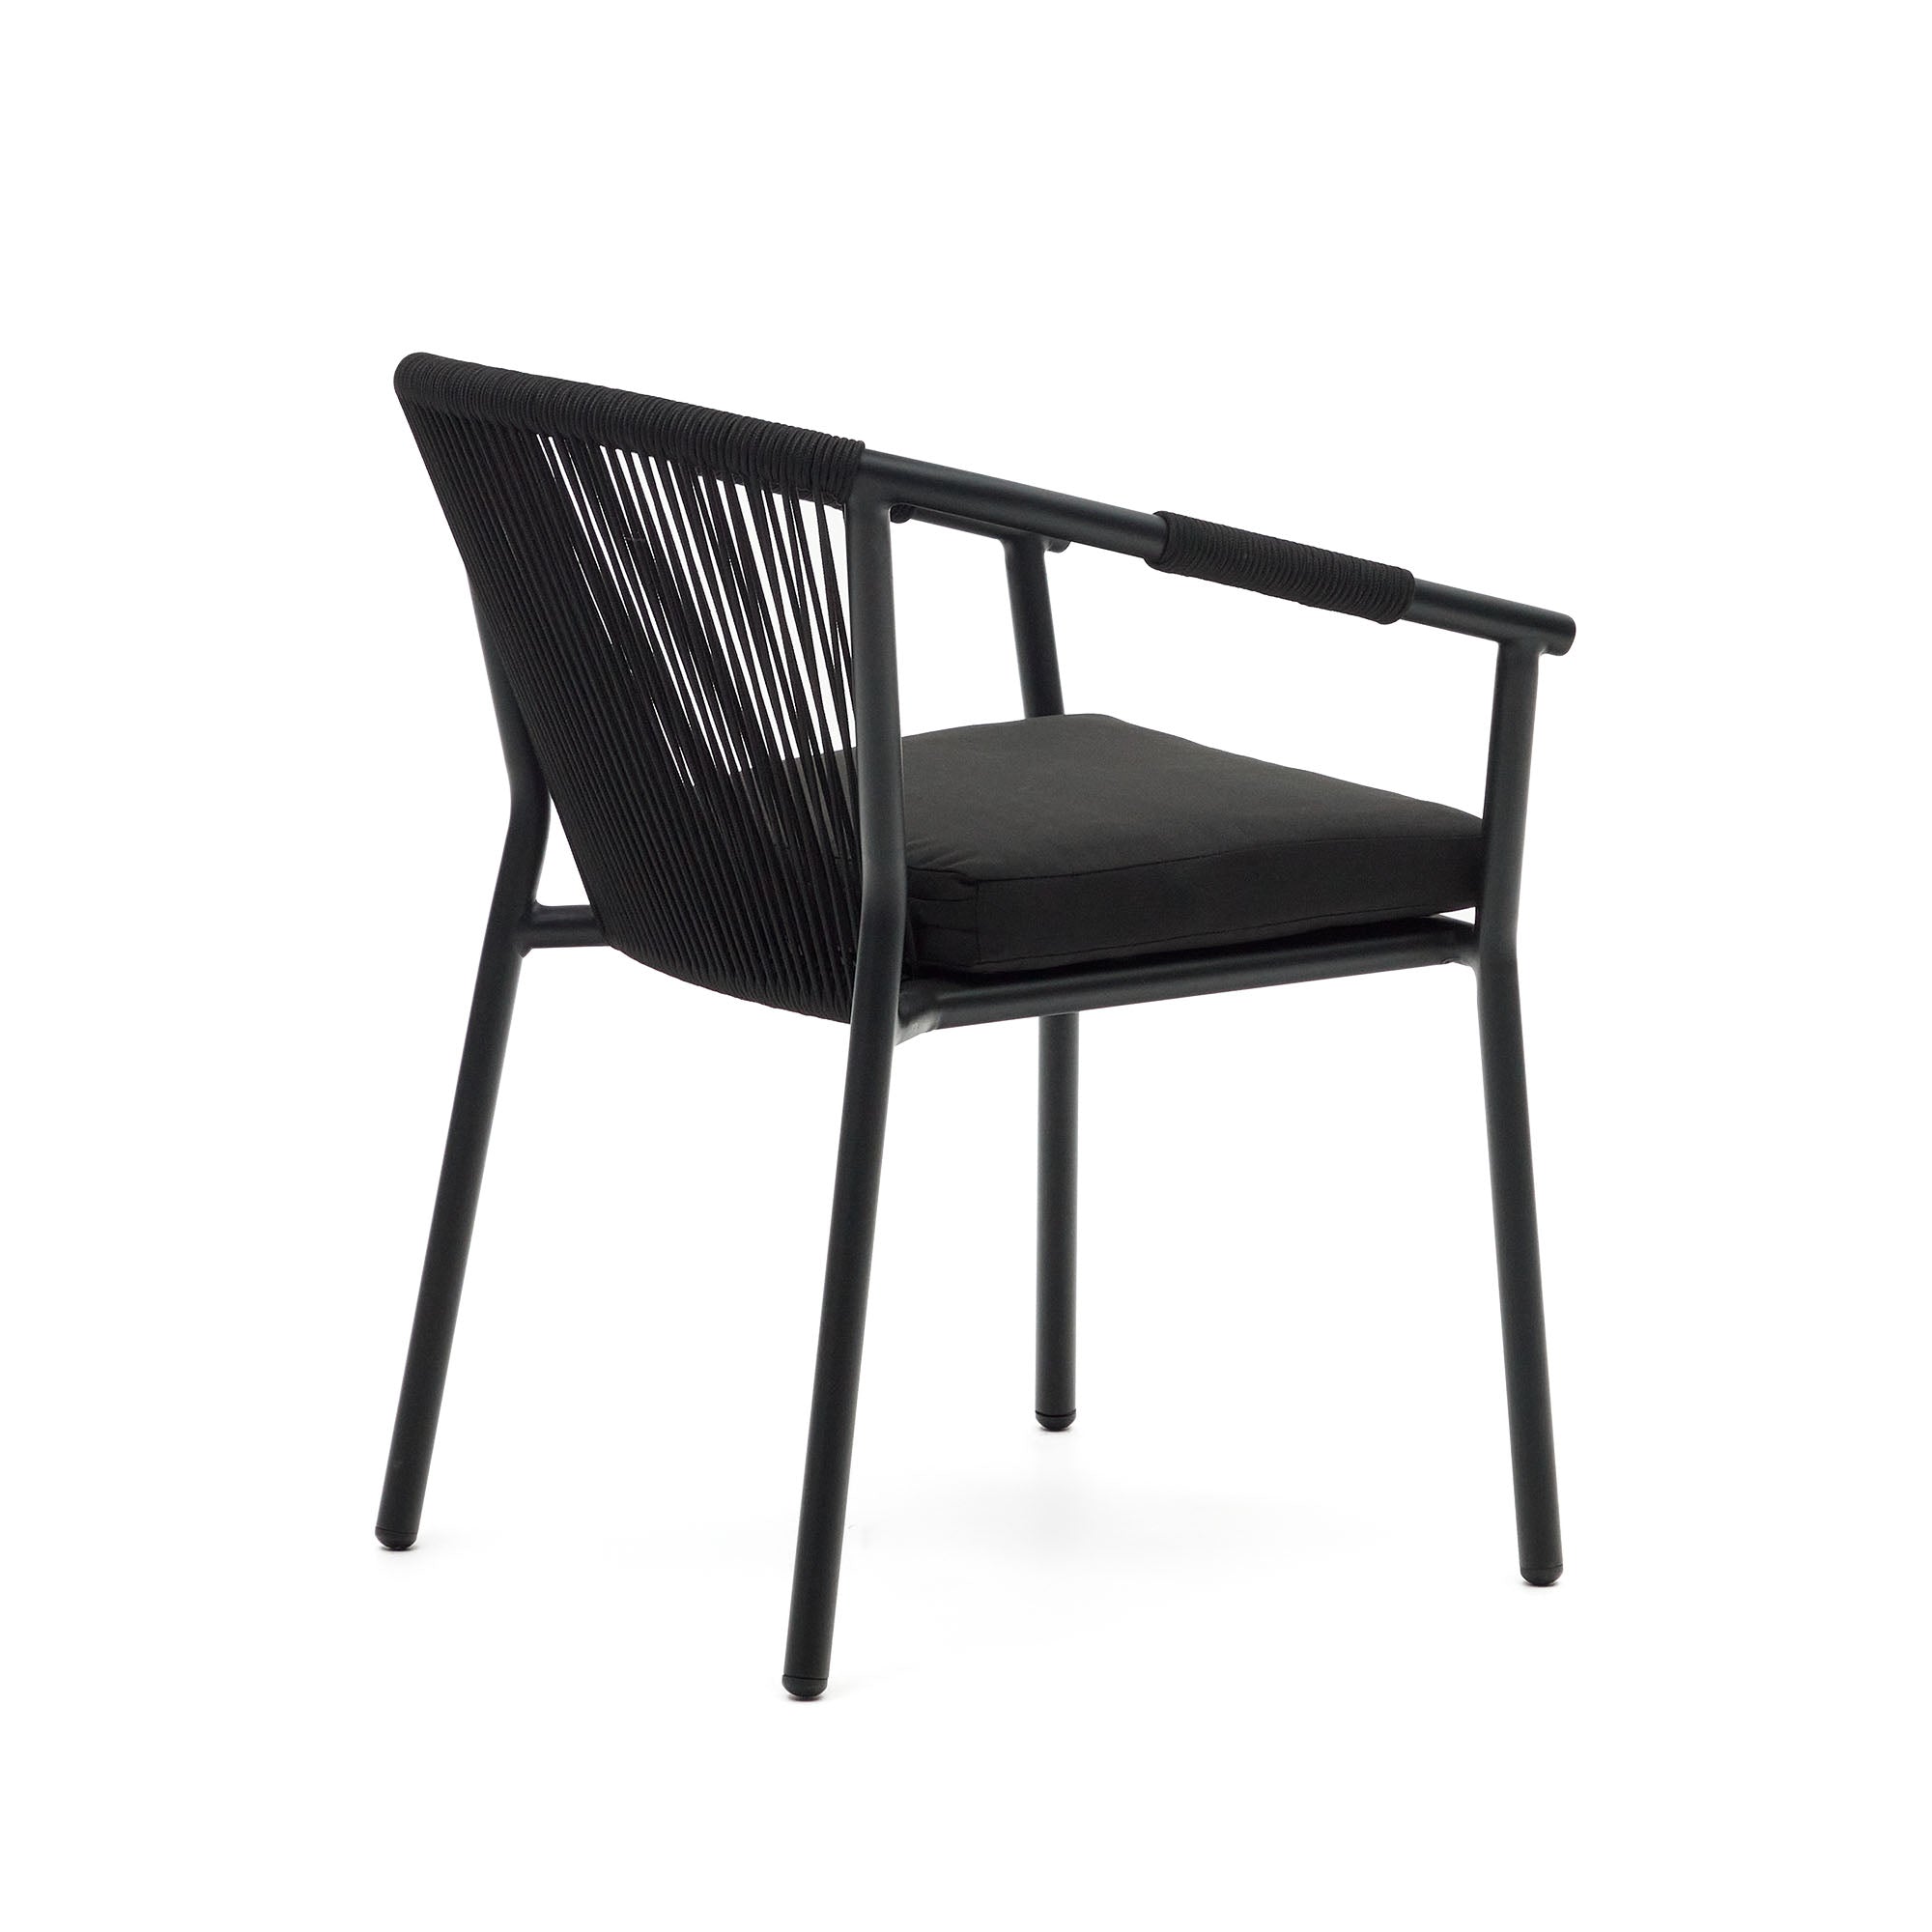 Xelida egymásba rakható kerti szék alumíniumból és fekete zsinórból